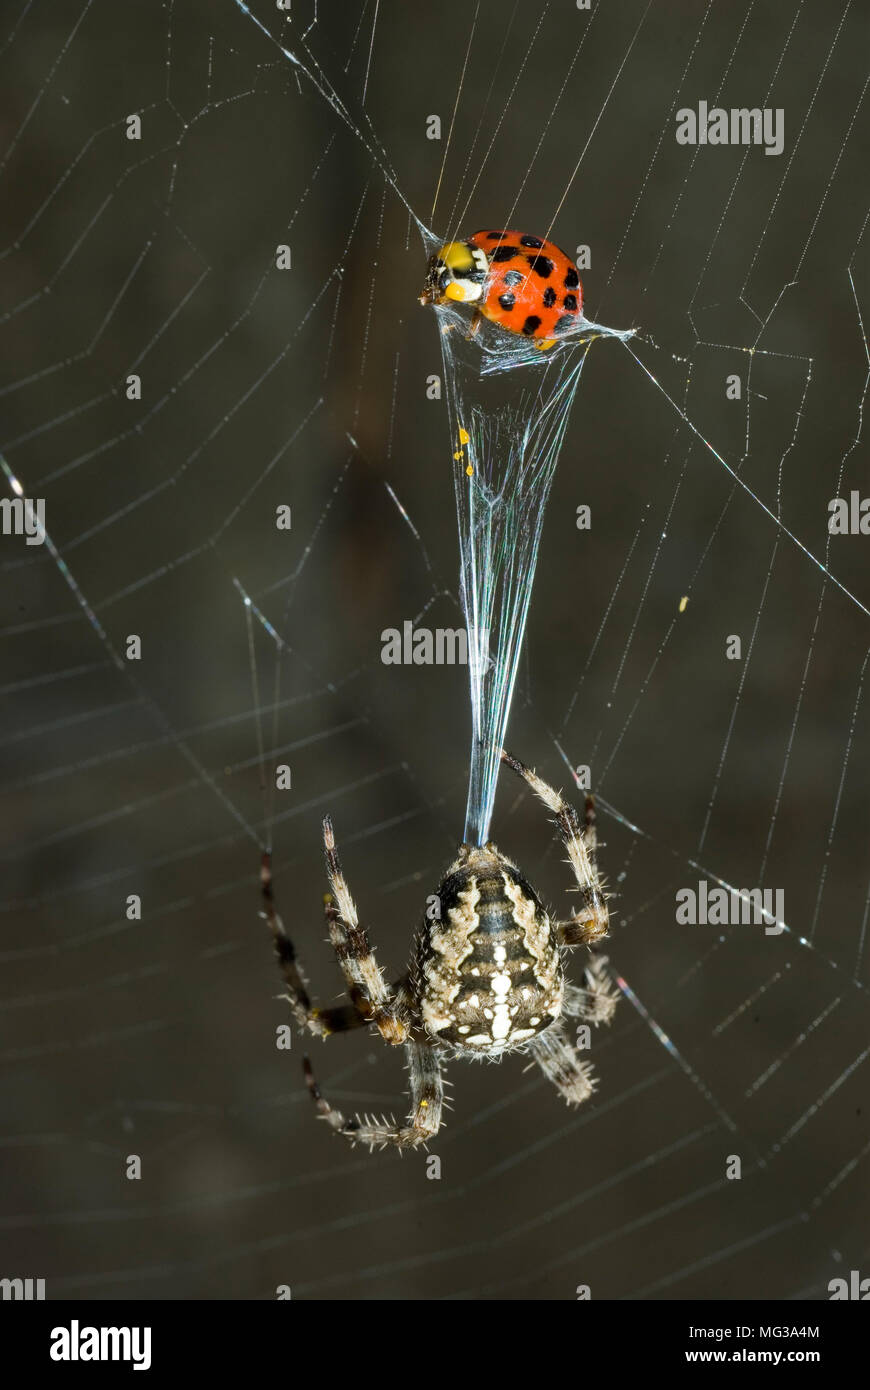 Garden Spider with Prey Stock Photo